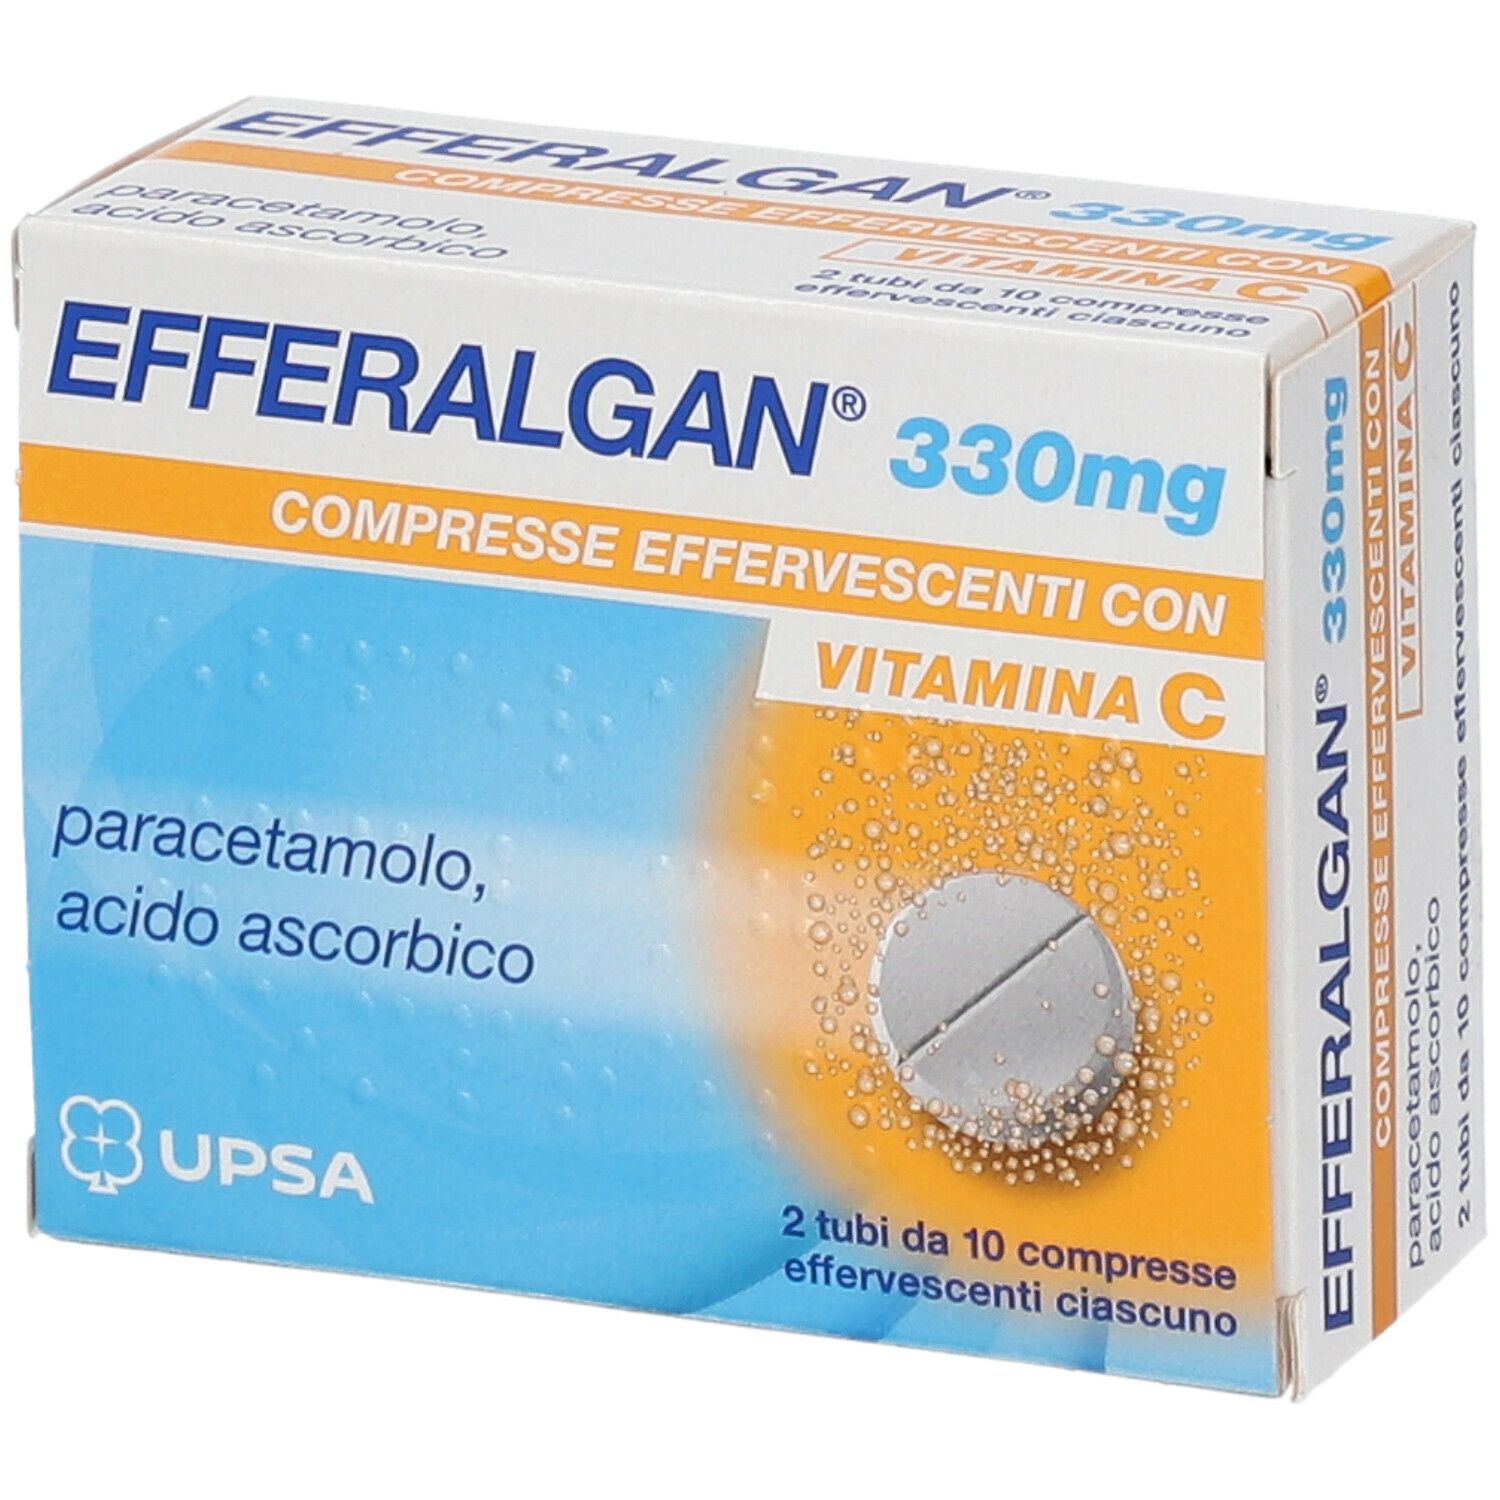 EFFERALGAN® 330 mg Compresse Effervescenti con Vitamina C